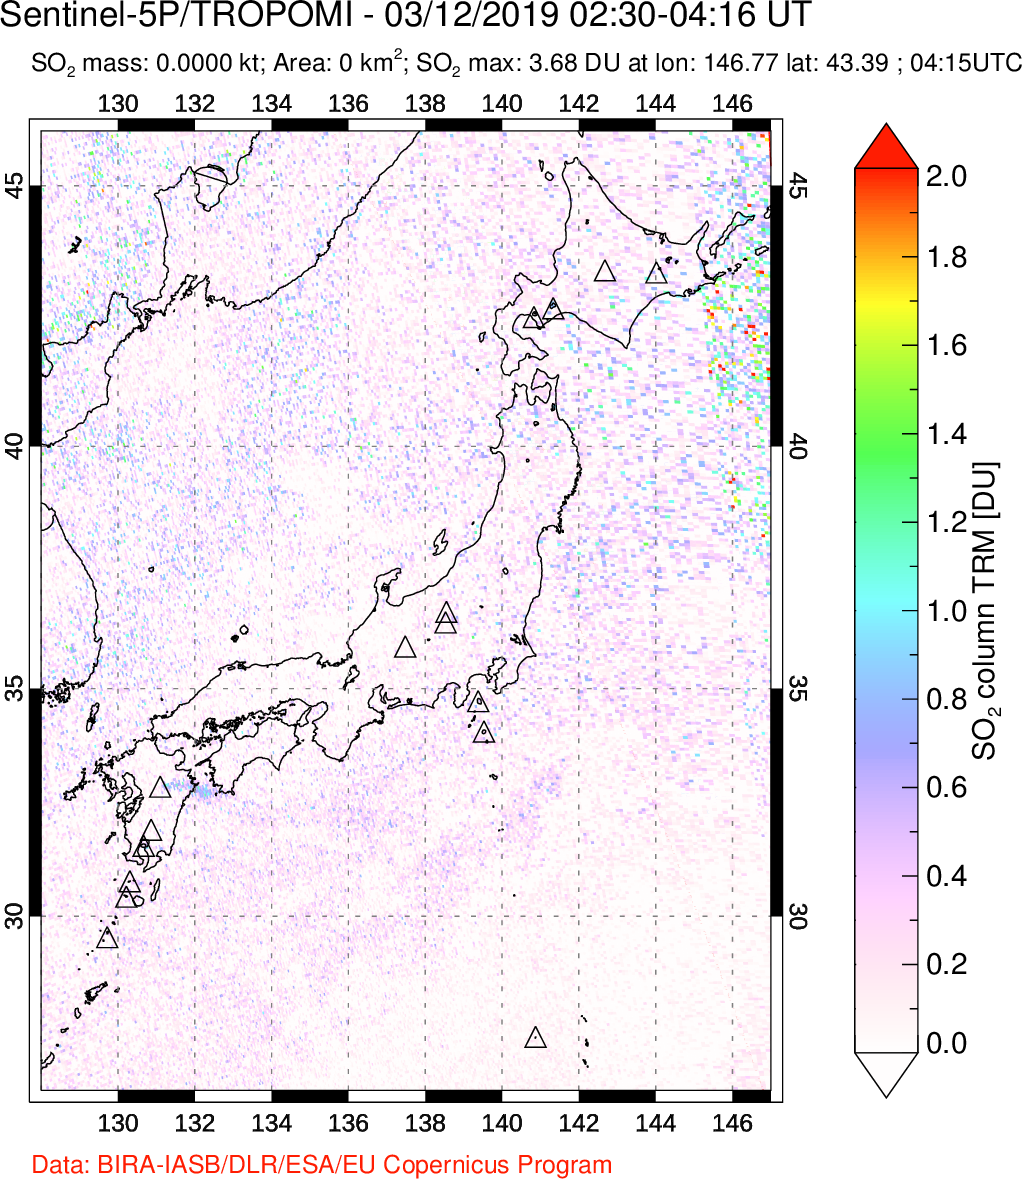 A sulfur dioxide image over Japan on Mar 12, 2019.